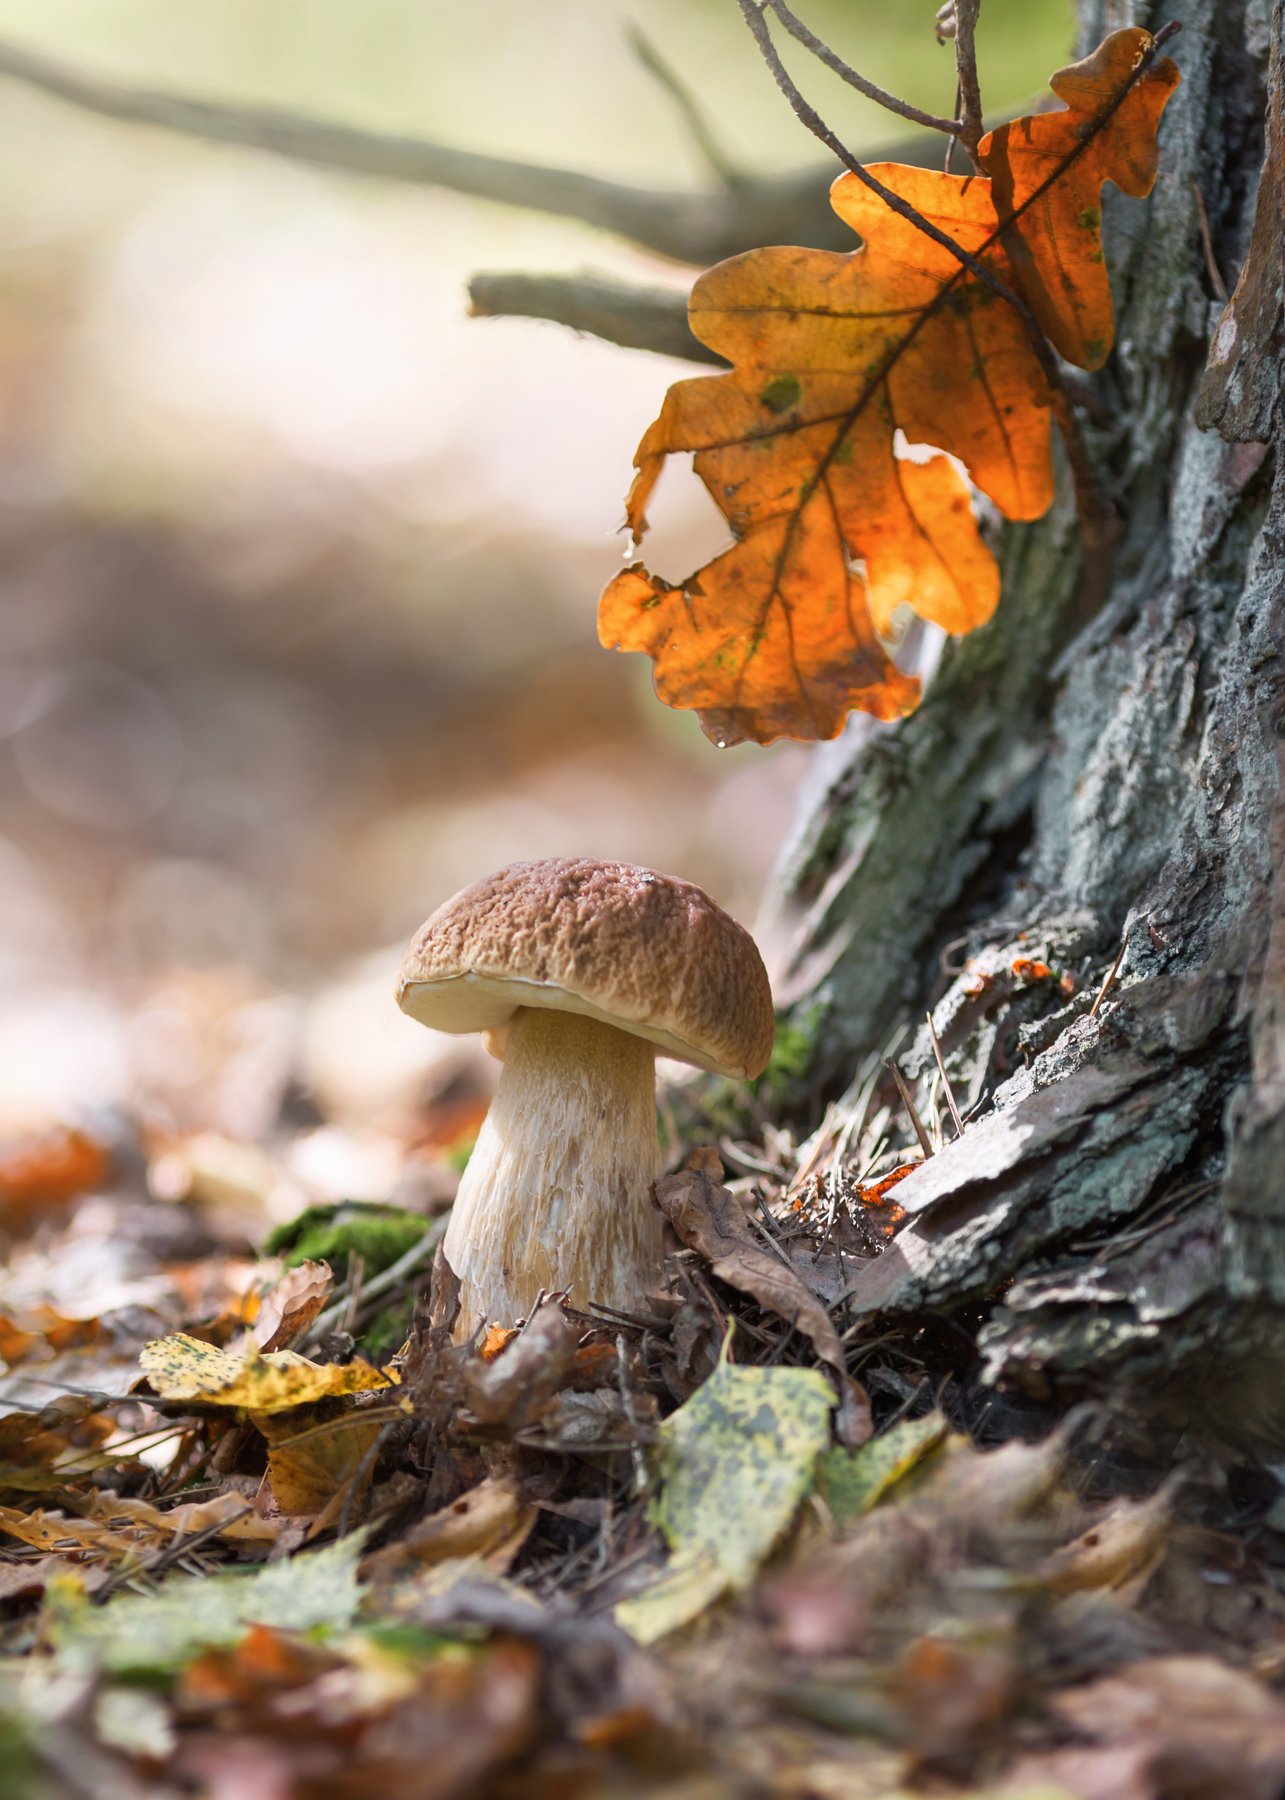 белый гриб,моя беларусь, прогулки в лесу, дубовый лист цвета янтаря, теплая осень,жизнь, лесные истории,моя беларусь, ирина горюкина, Ирина Горюкина